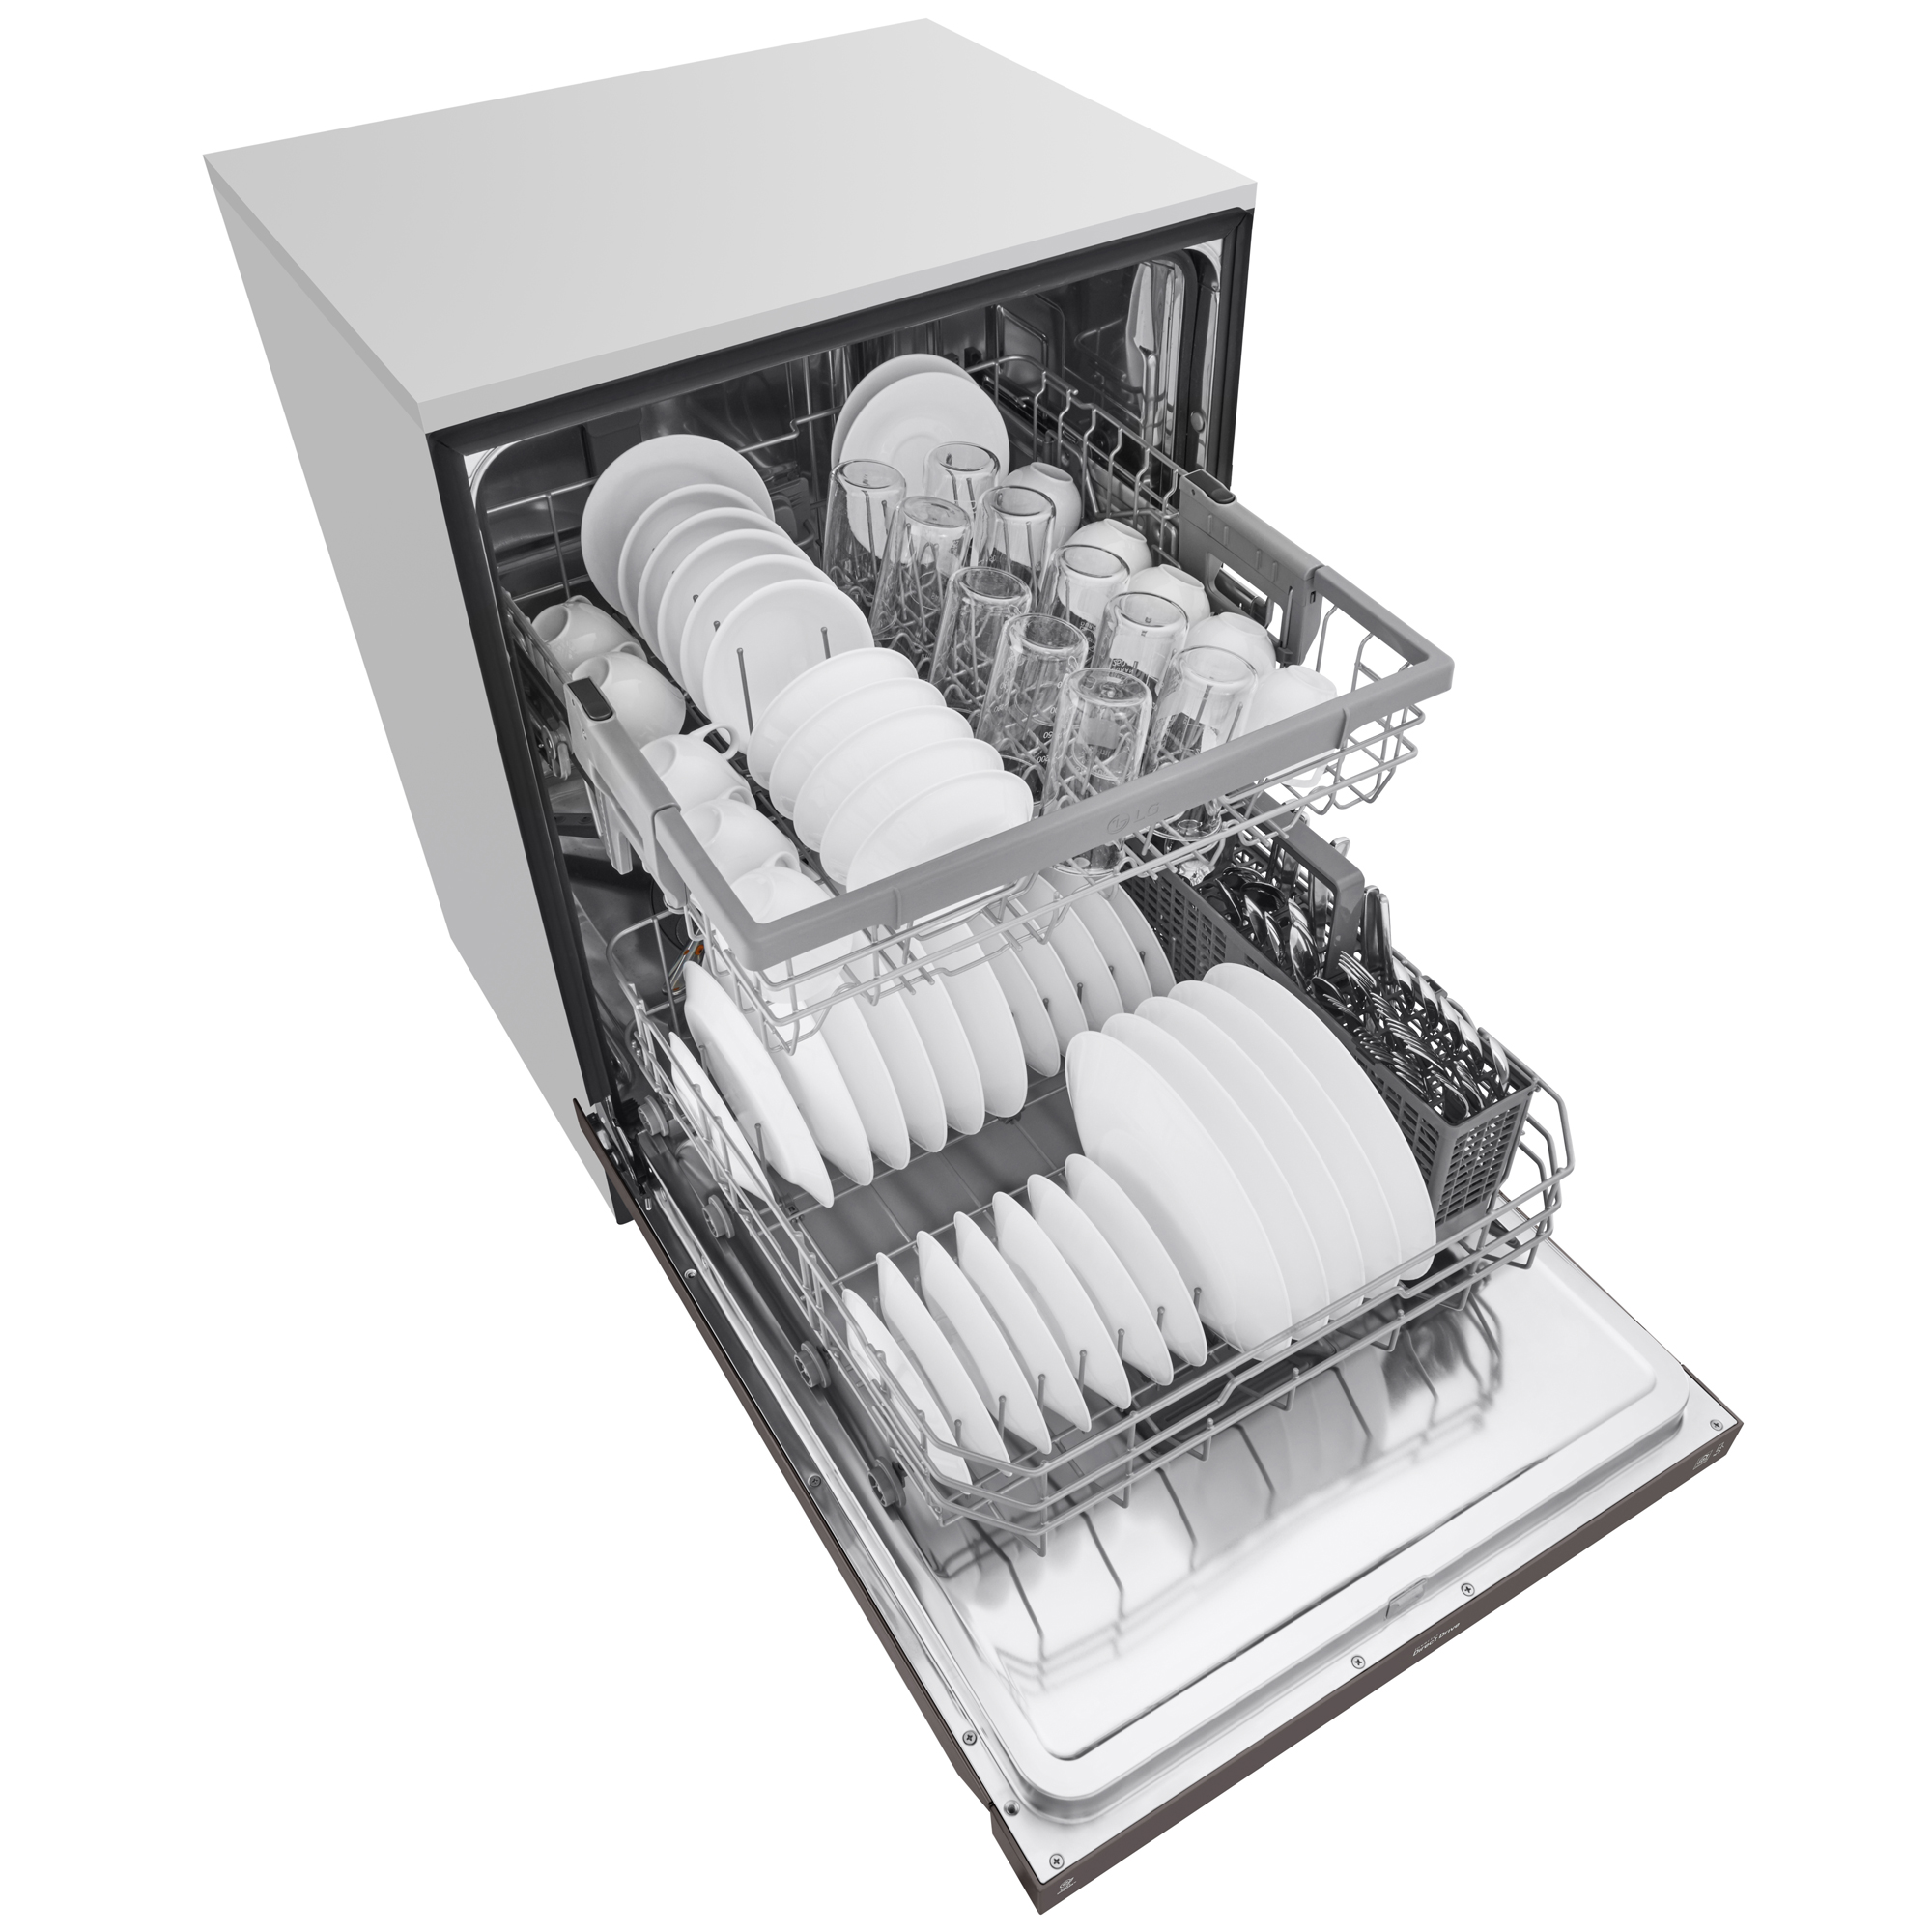 lg dishwasher ldf5545bd reviews